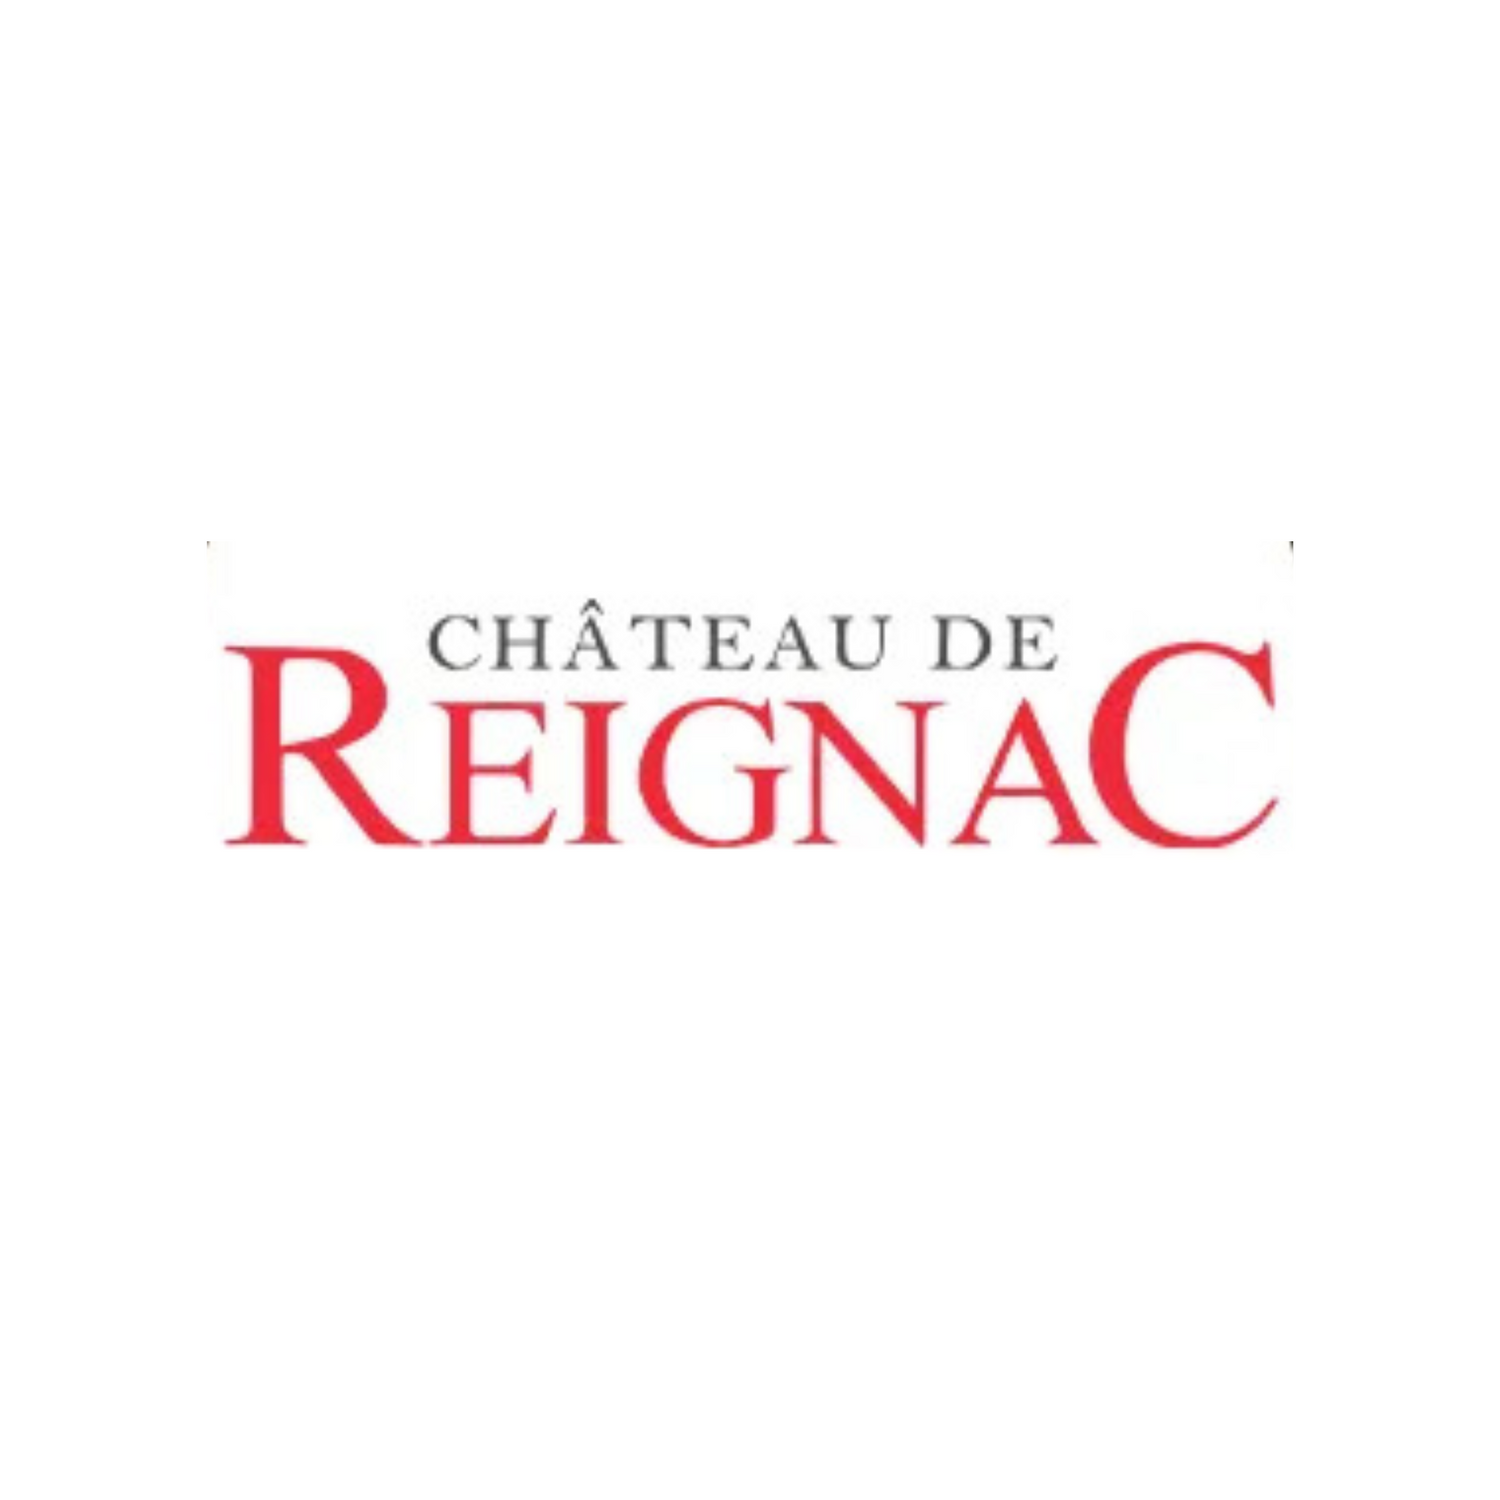 CHATEAU DE REIGNAC